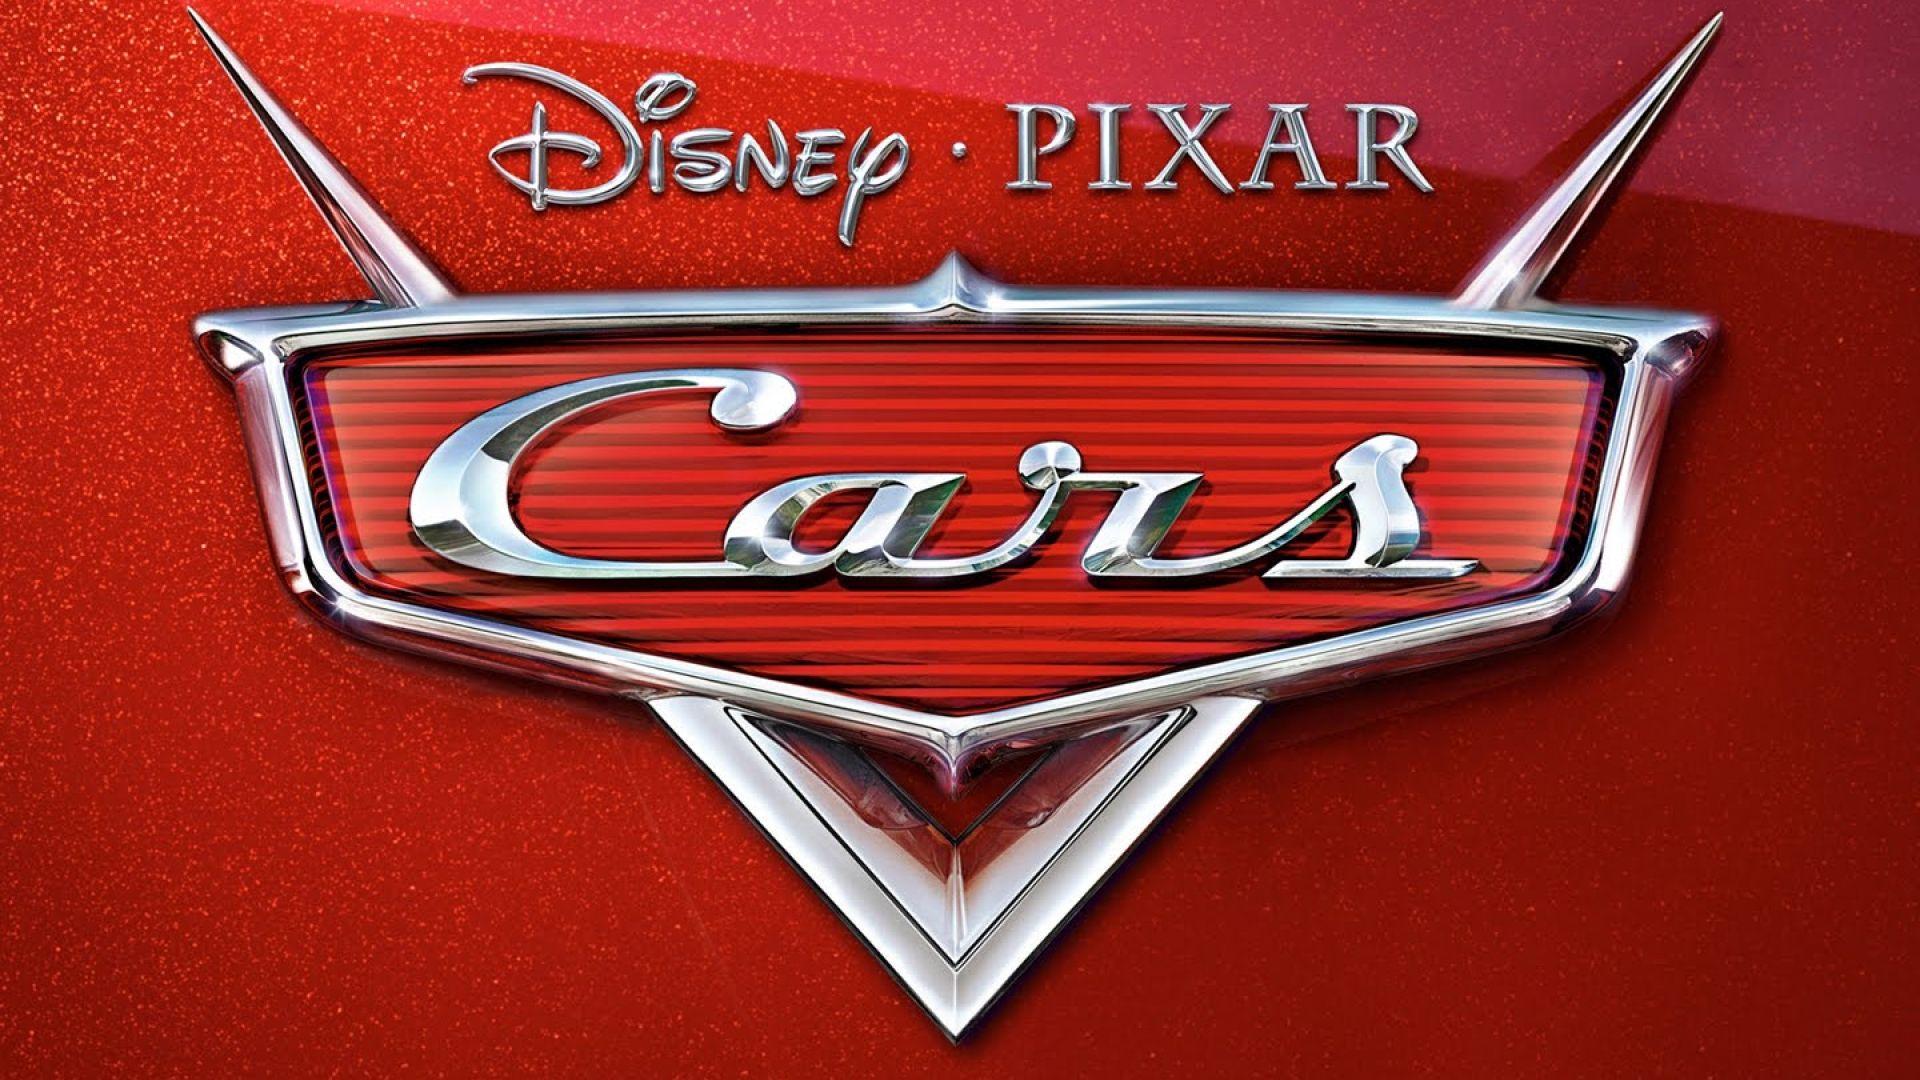 Disney Pixar Cars Logo - Disney Pixar Cars Wallpaper - HD Wallpapers